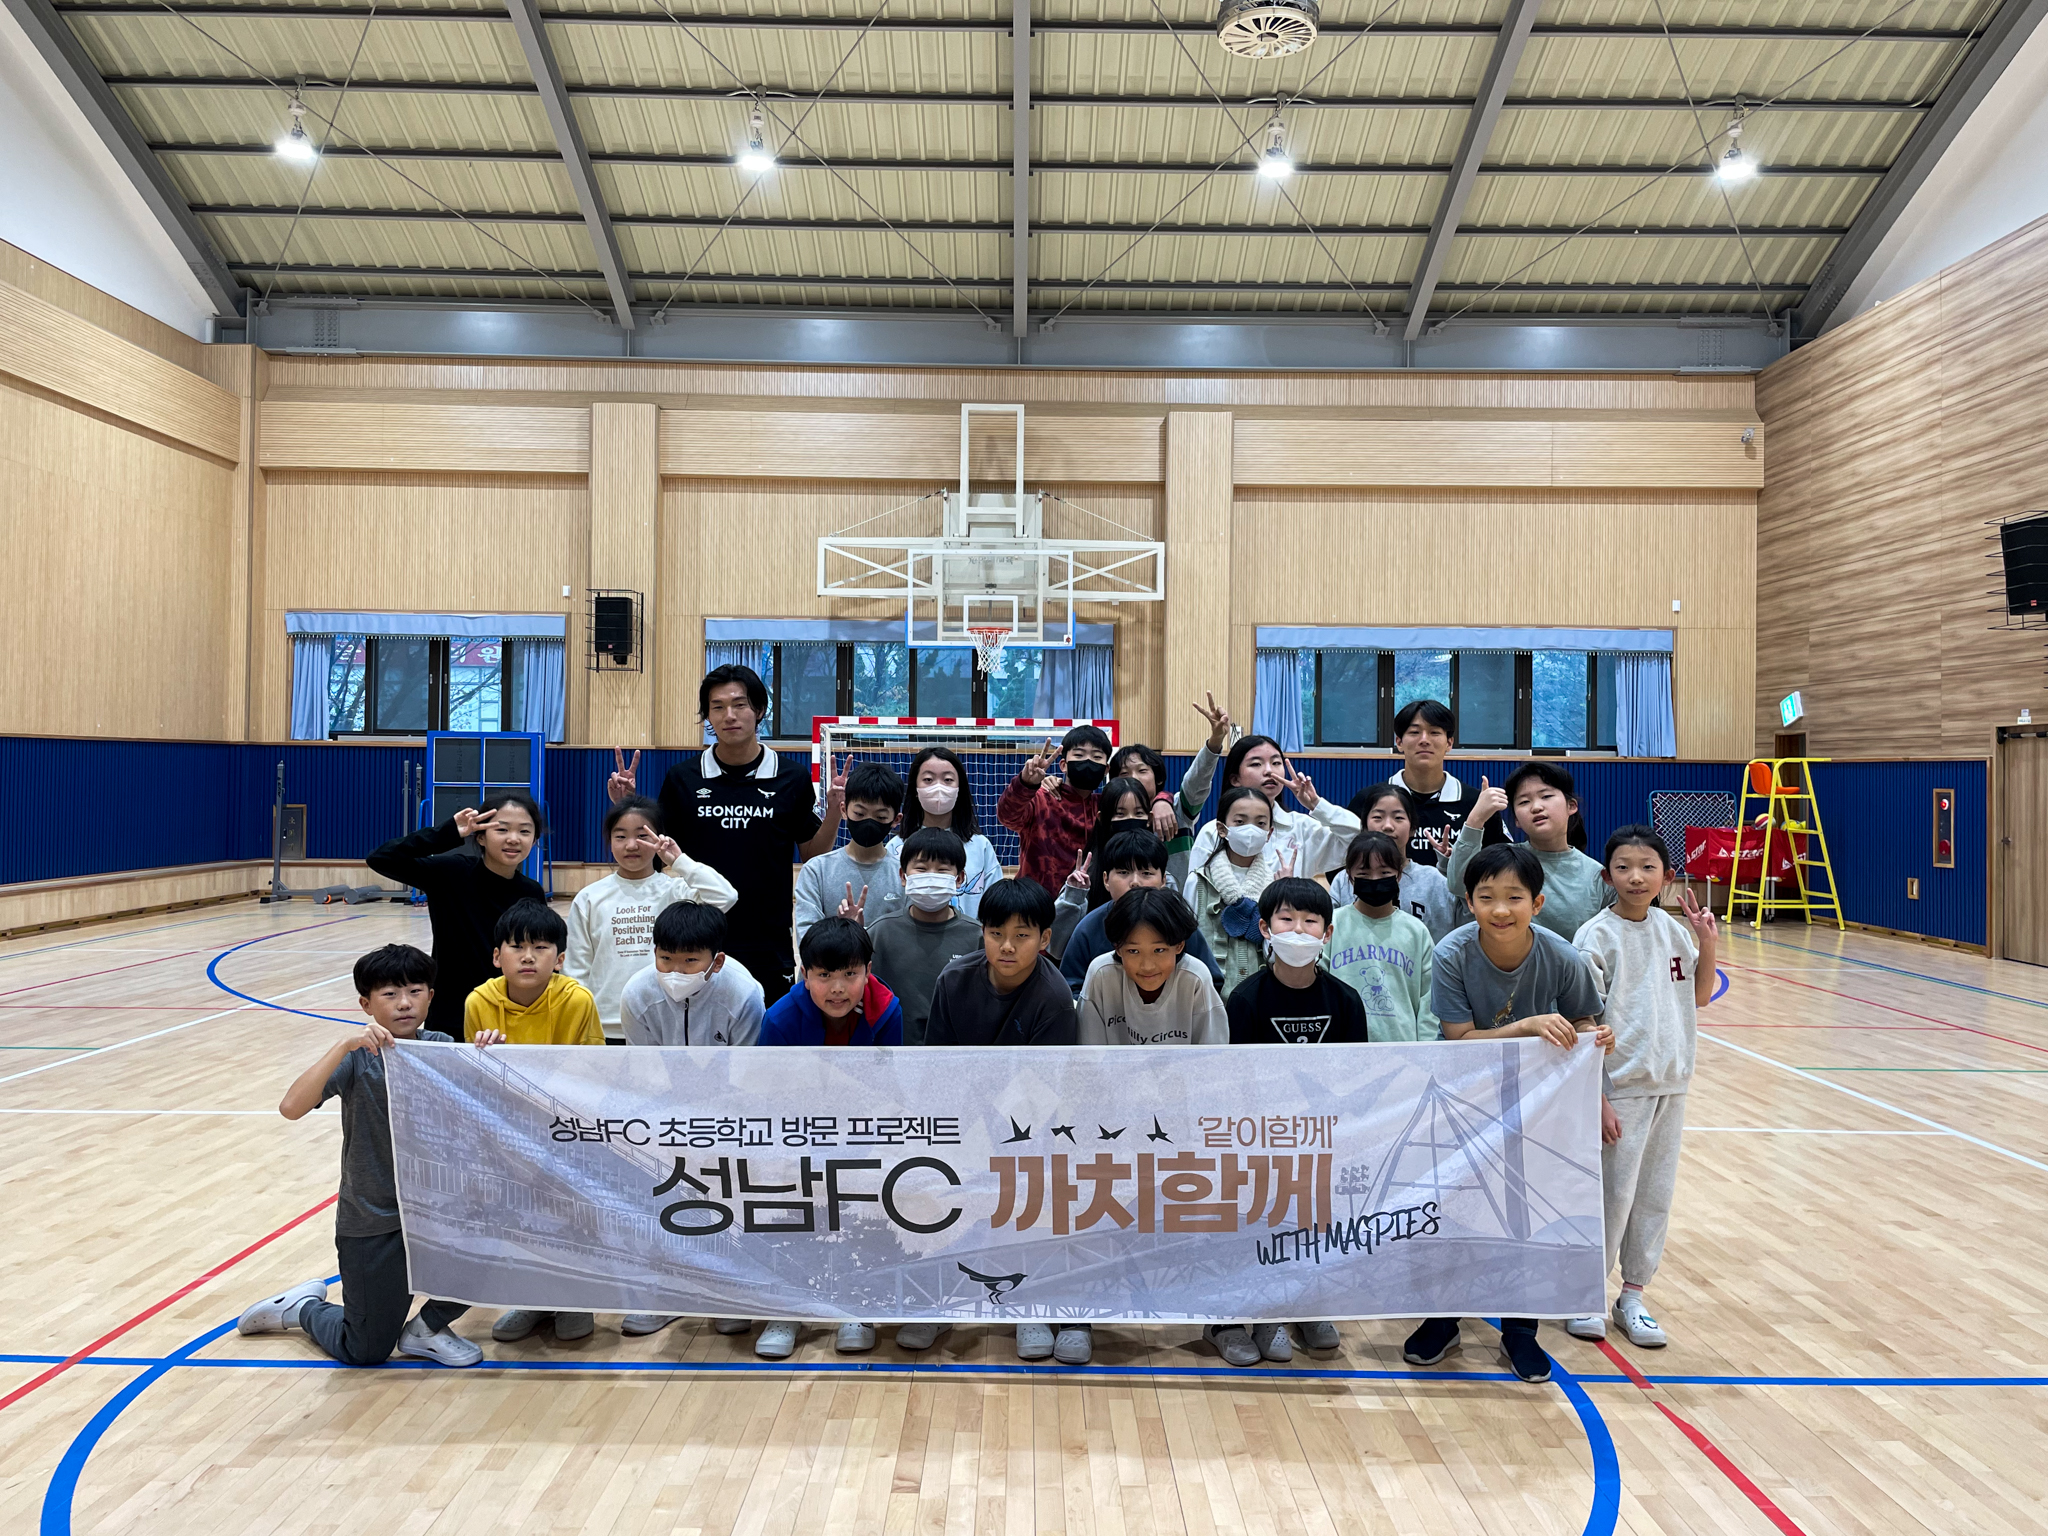  ‘까치함께’로 초등학생 만난 성남FC <br> 축구 클리닉부터 영어 수업까지, 다양한 경험!